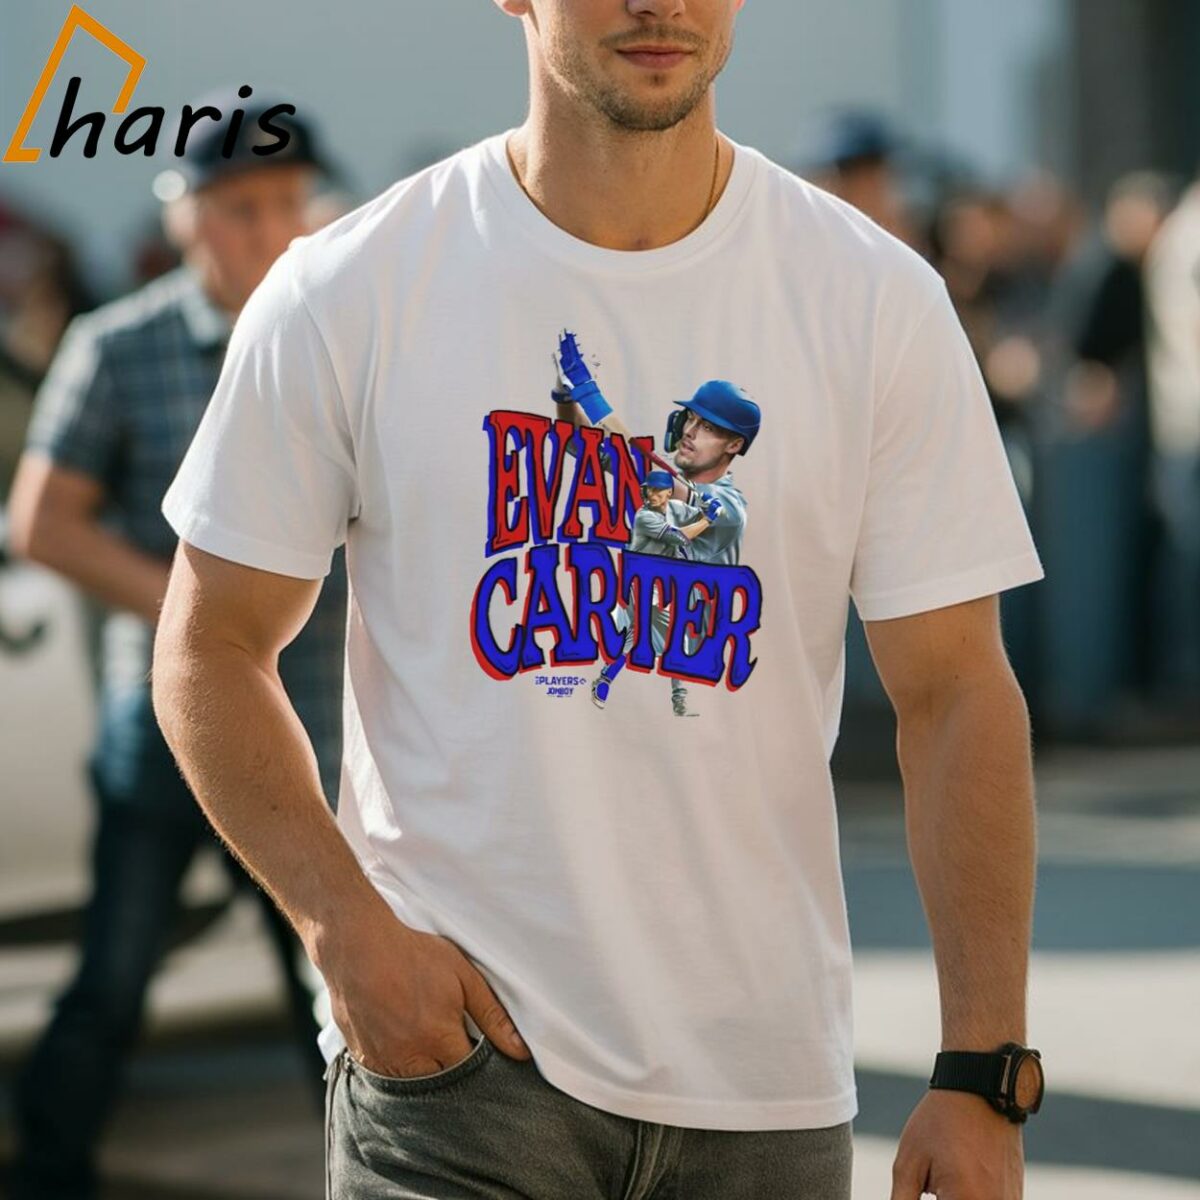 Texas Rangers Evan Carter 32 T shirt 1 Shirt